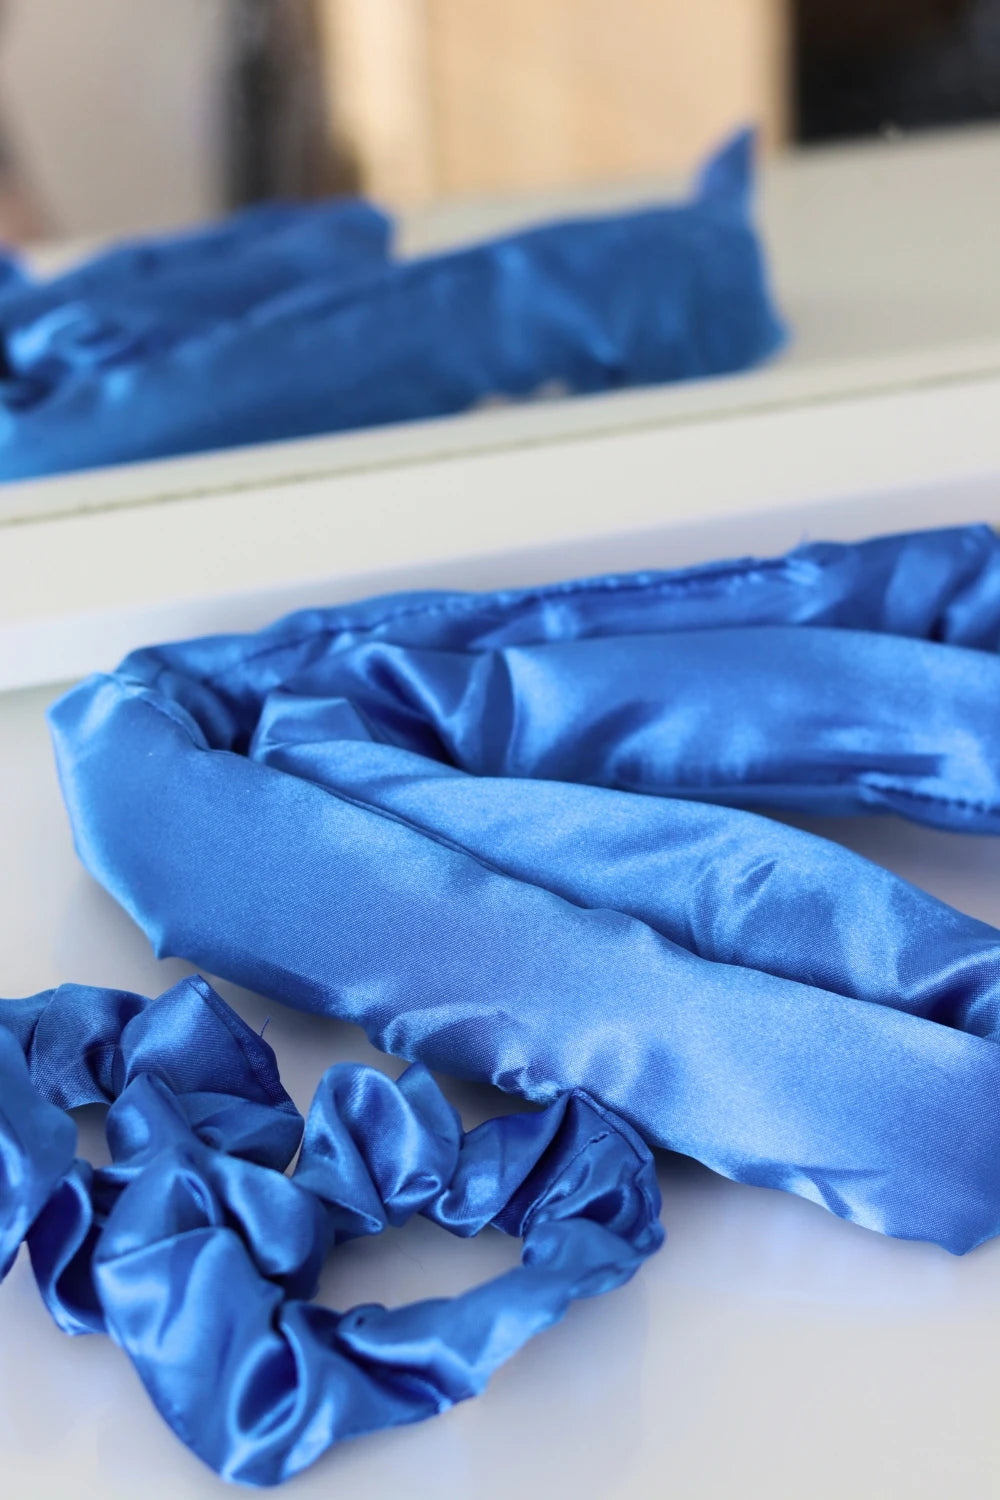 Sininen heatless curler - hellävarainen lämmötön kiharrin hiuksille - hellävaraiset ja kestävät kiharat ilman lämpöä